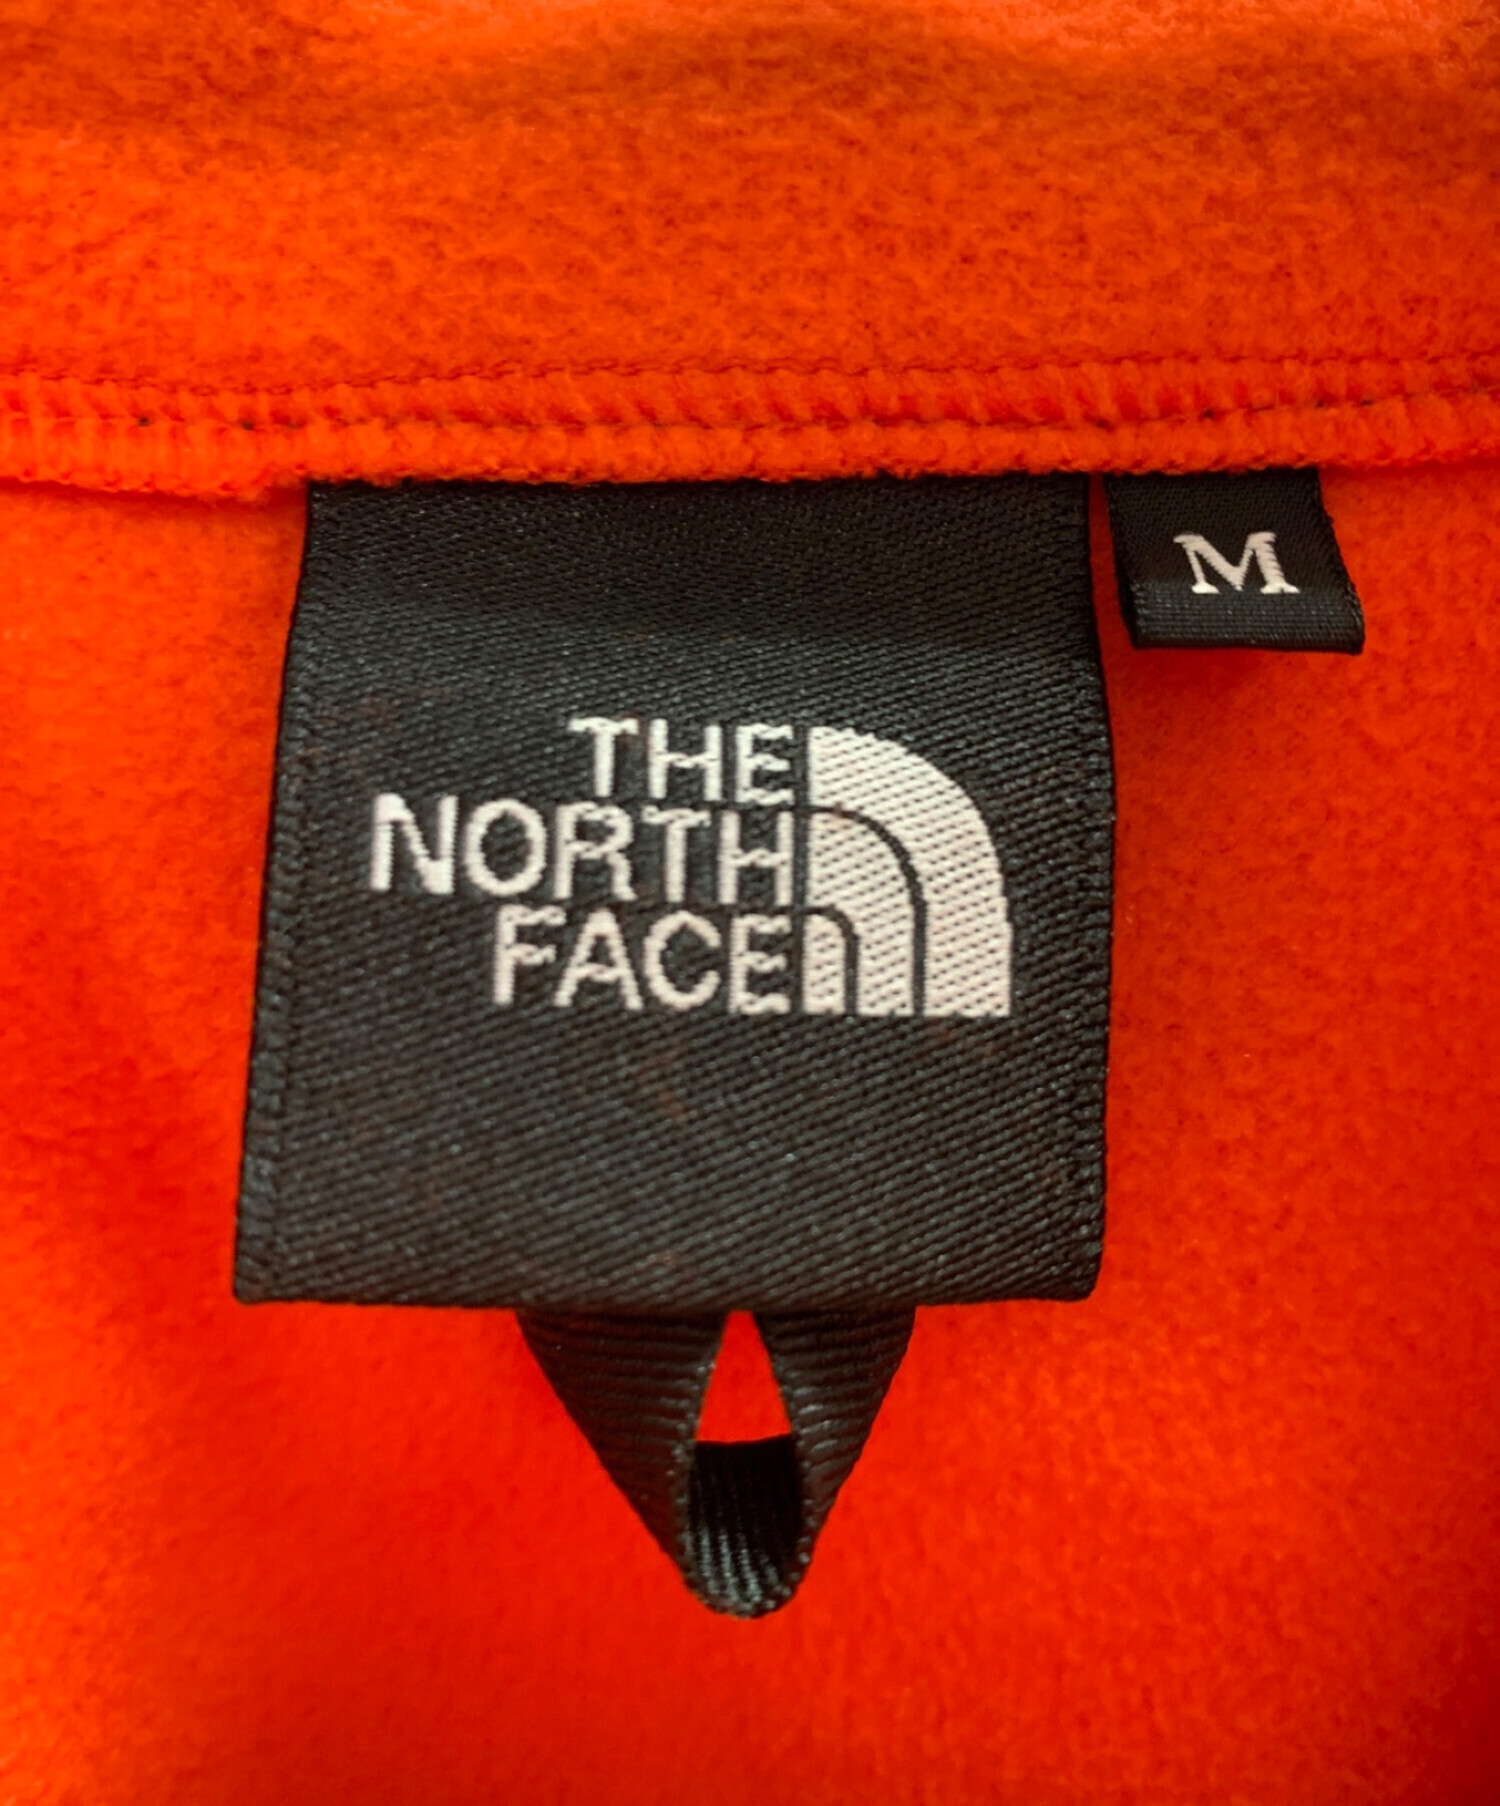 THE NORTH FACE (ザ ノース フェイス) マウンテンバーサマイクロジャケット オレンジ×ブラック サイズ:M